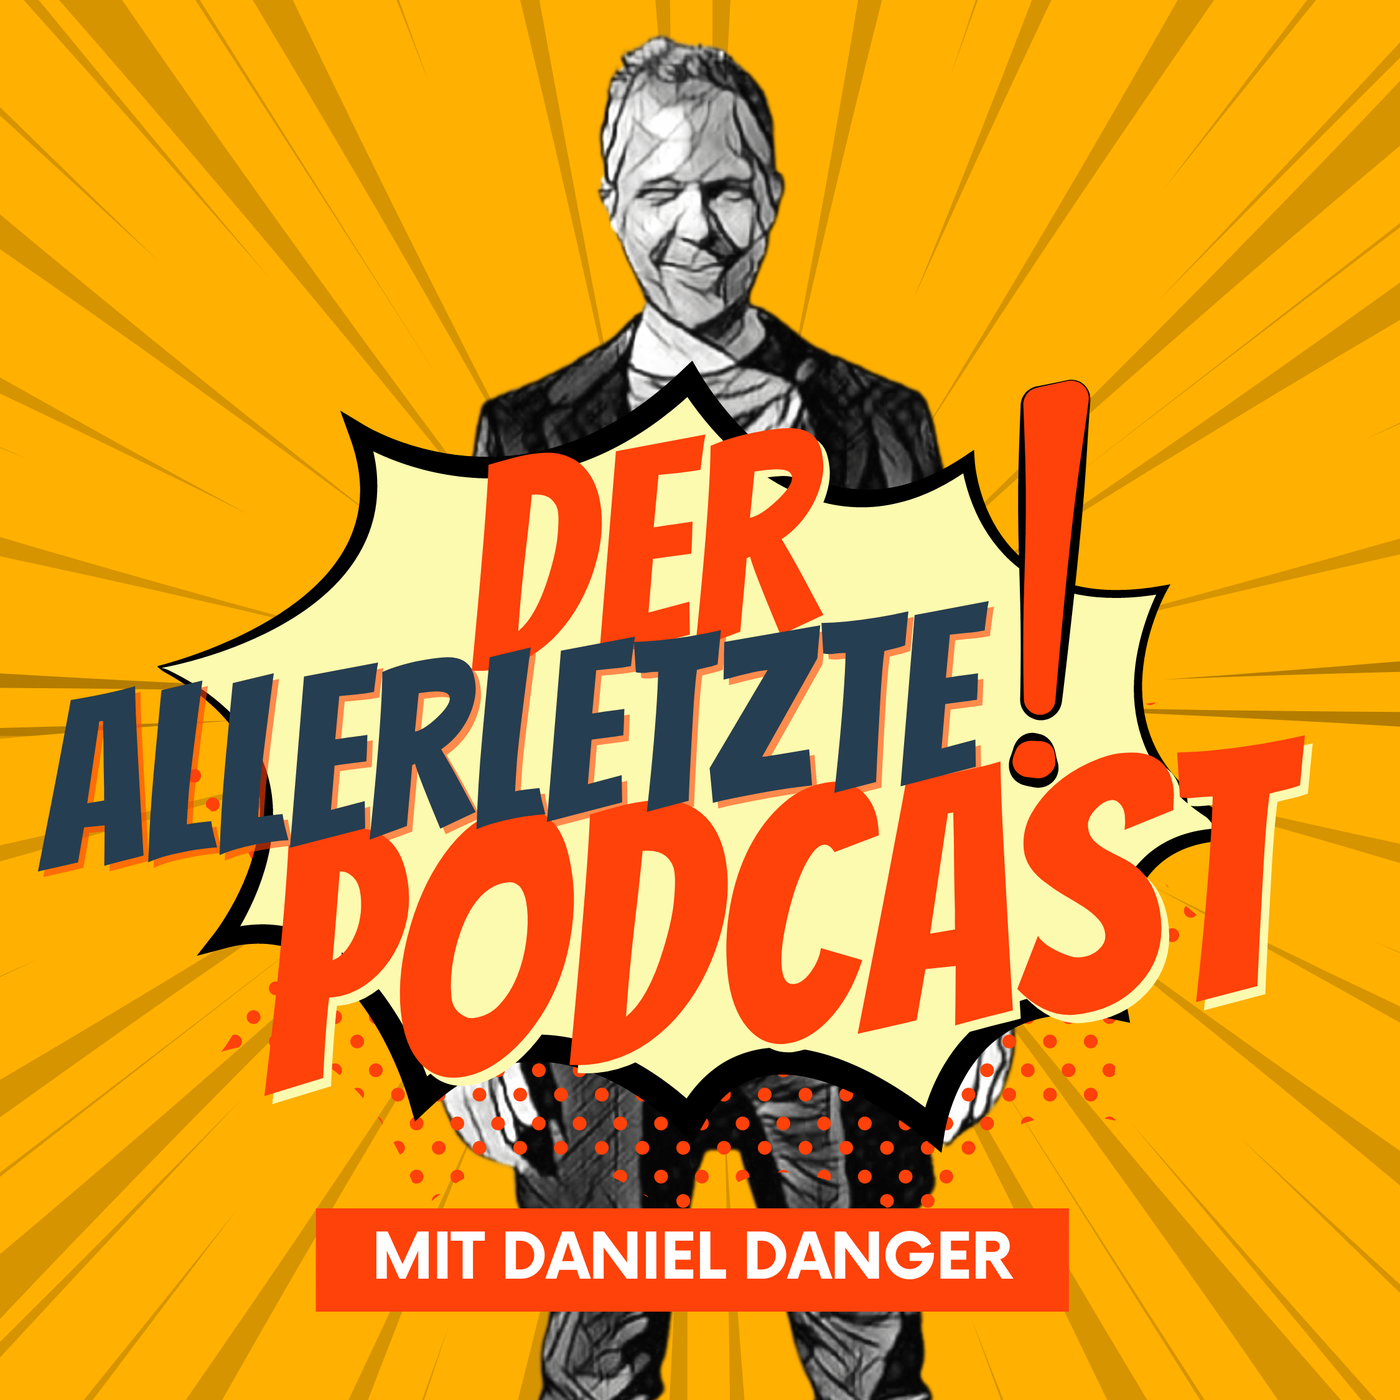 Trailer: Der Allerletzte Podcast mit Daniel Danger